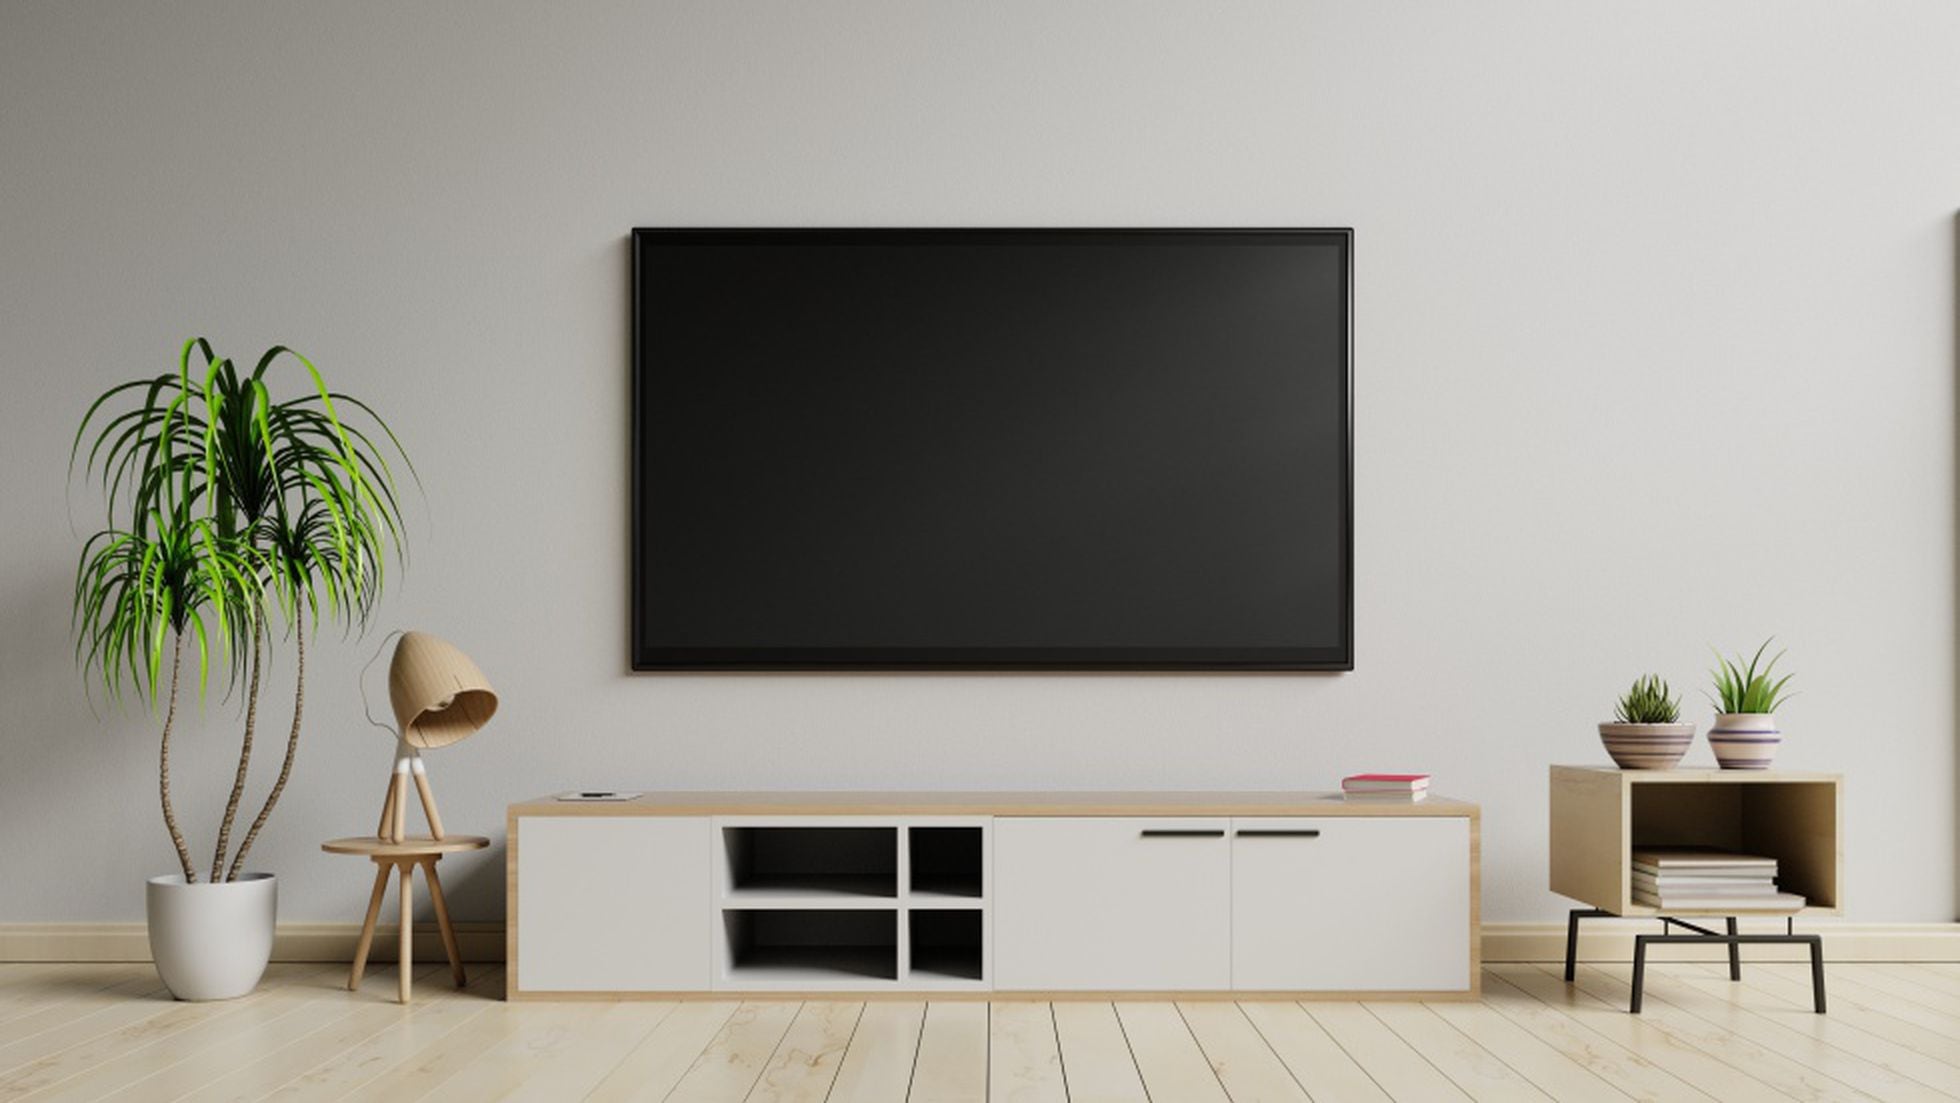 Inclinable y giratorio: este soporte para la televisión tiene más de 18.000 valoraciones en Amazon | Escaparate: y ofertas | EL PAÍS